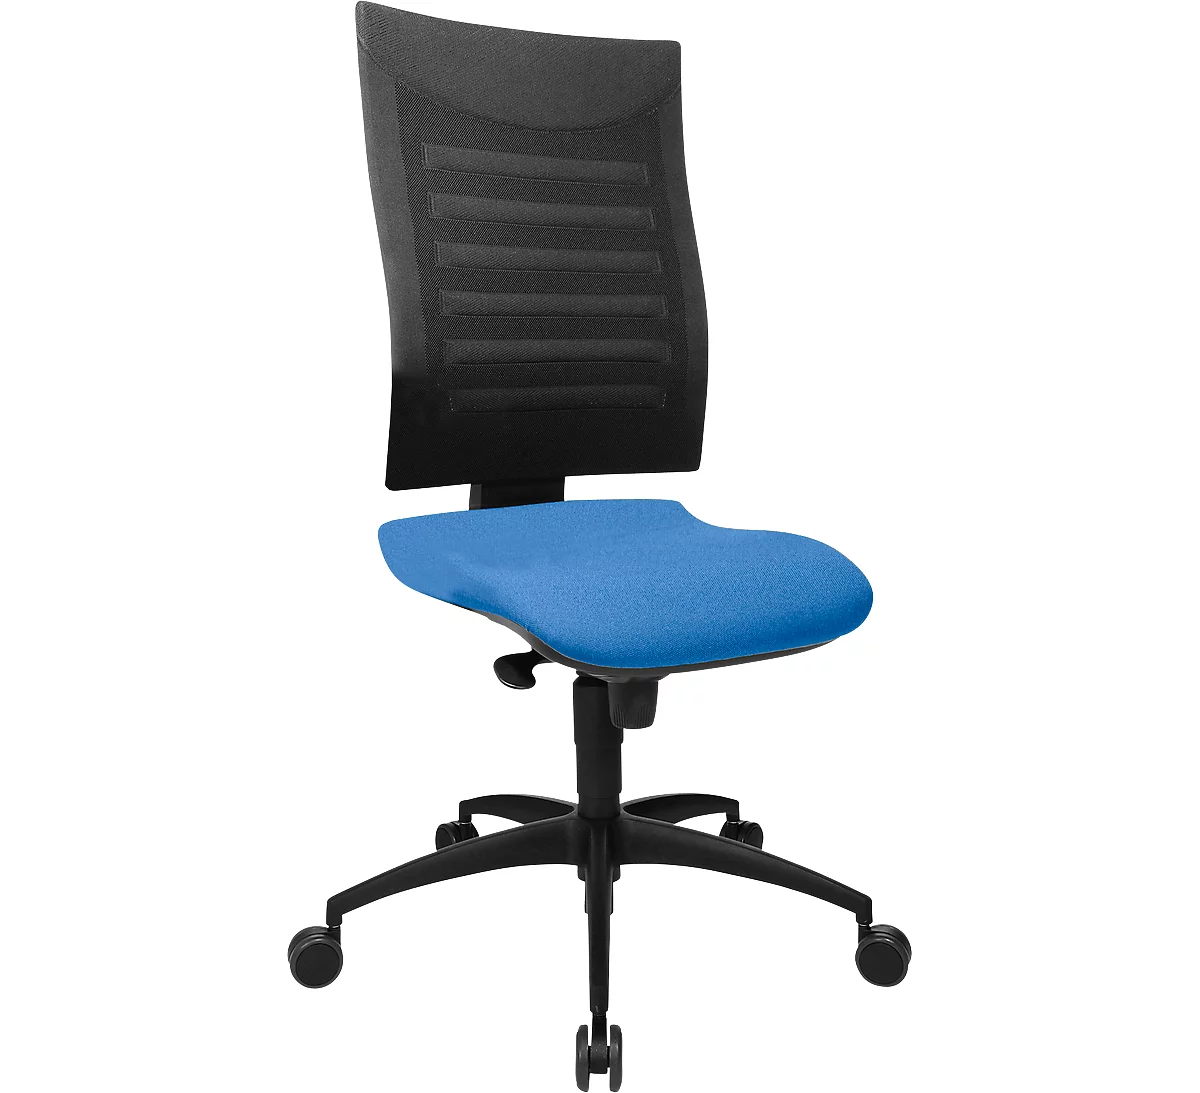 Bürostuhl SSI PROLINE S1, Synchronmechanik, ohne Armlehnen, 3D-Netz-Rückenlehne, Bandscheibensitz, blau/schwarz